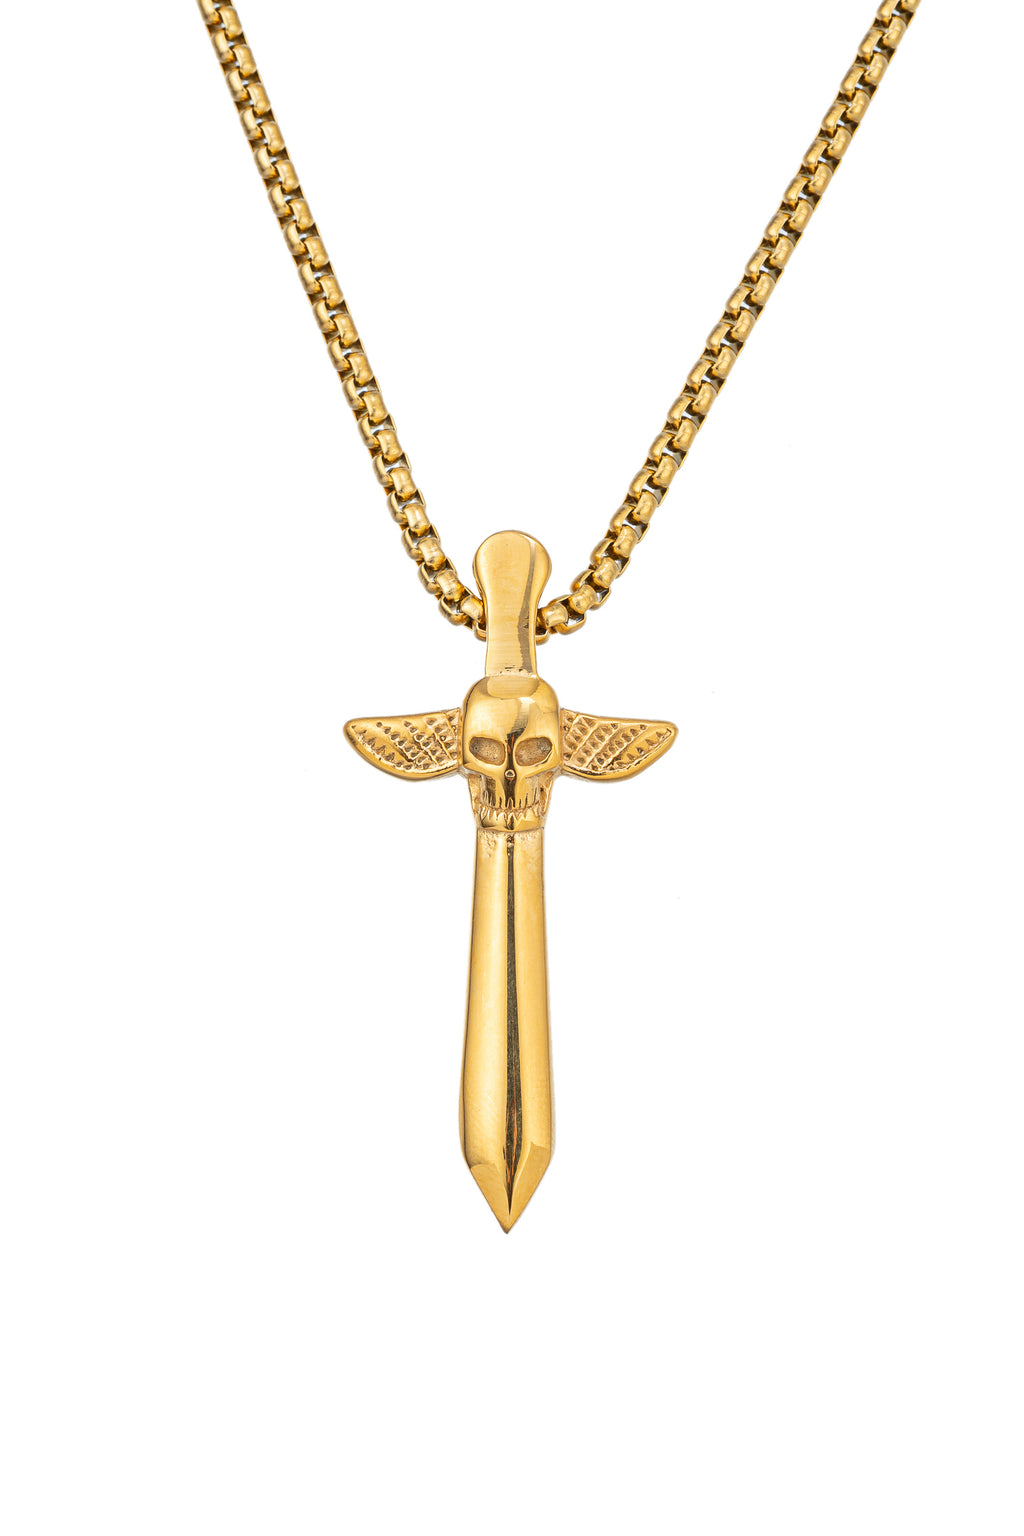 Gold tone titanium skull cross sword pendant necklace.